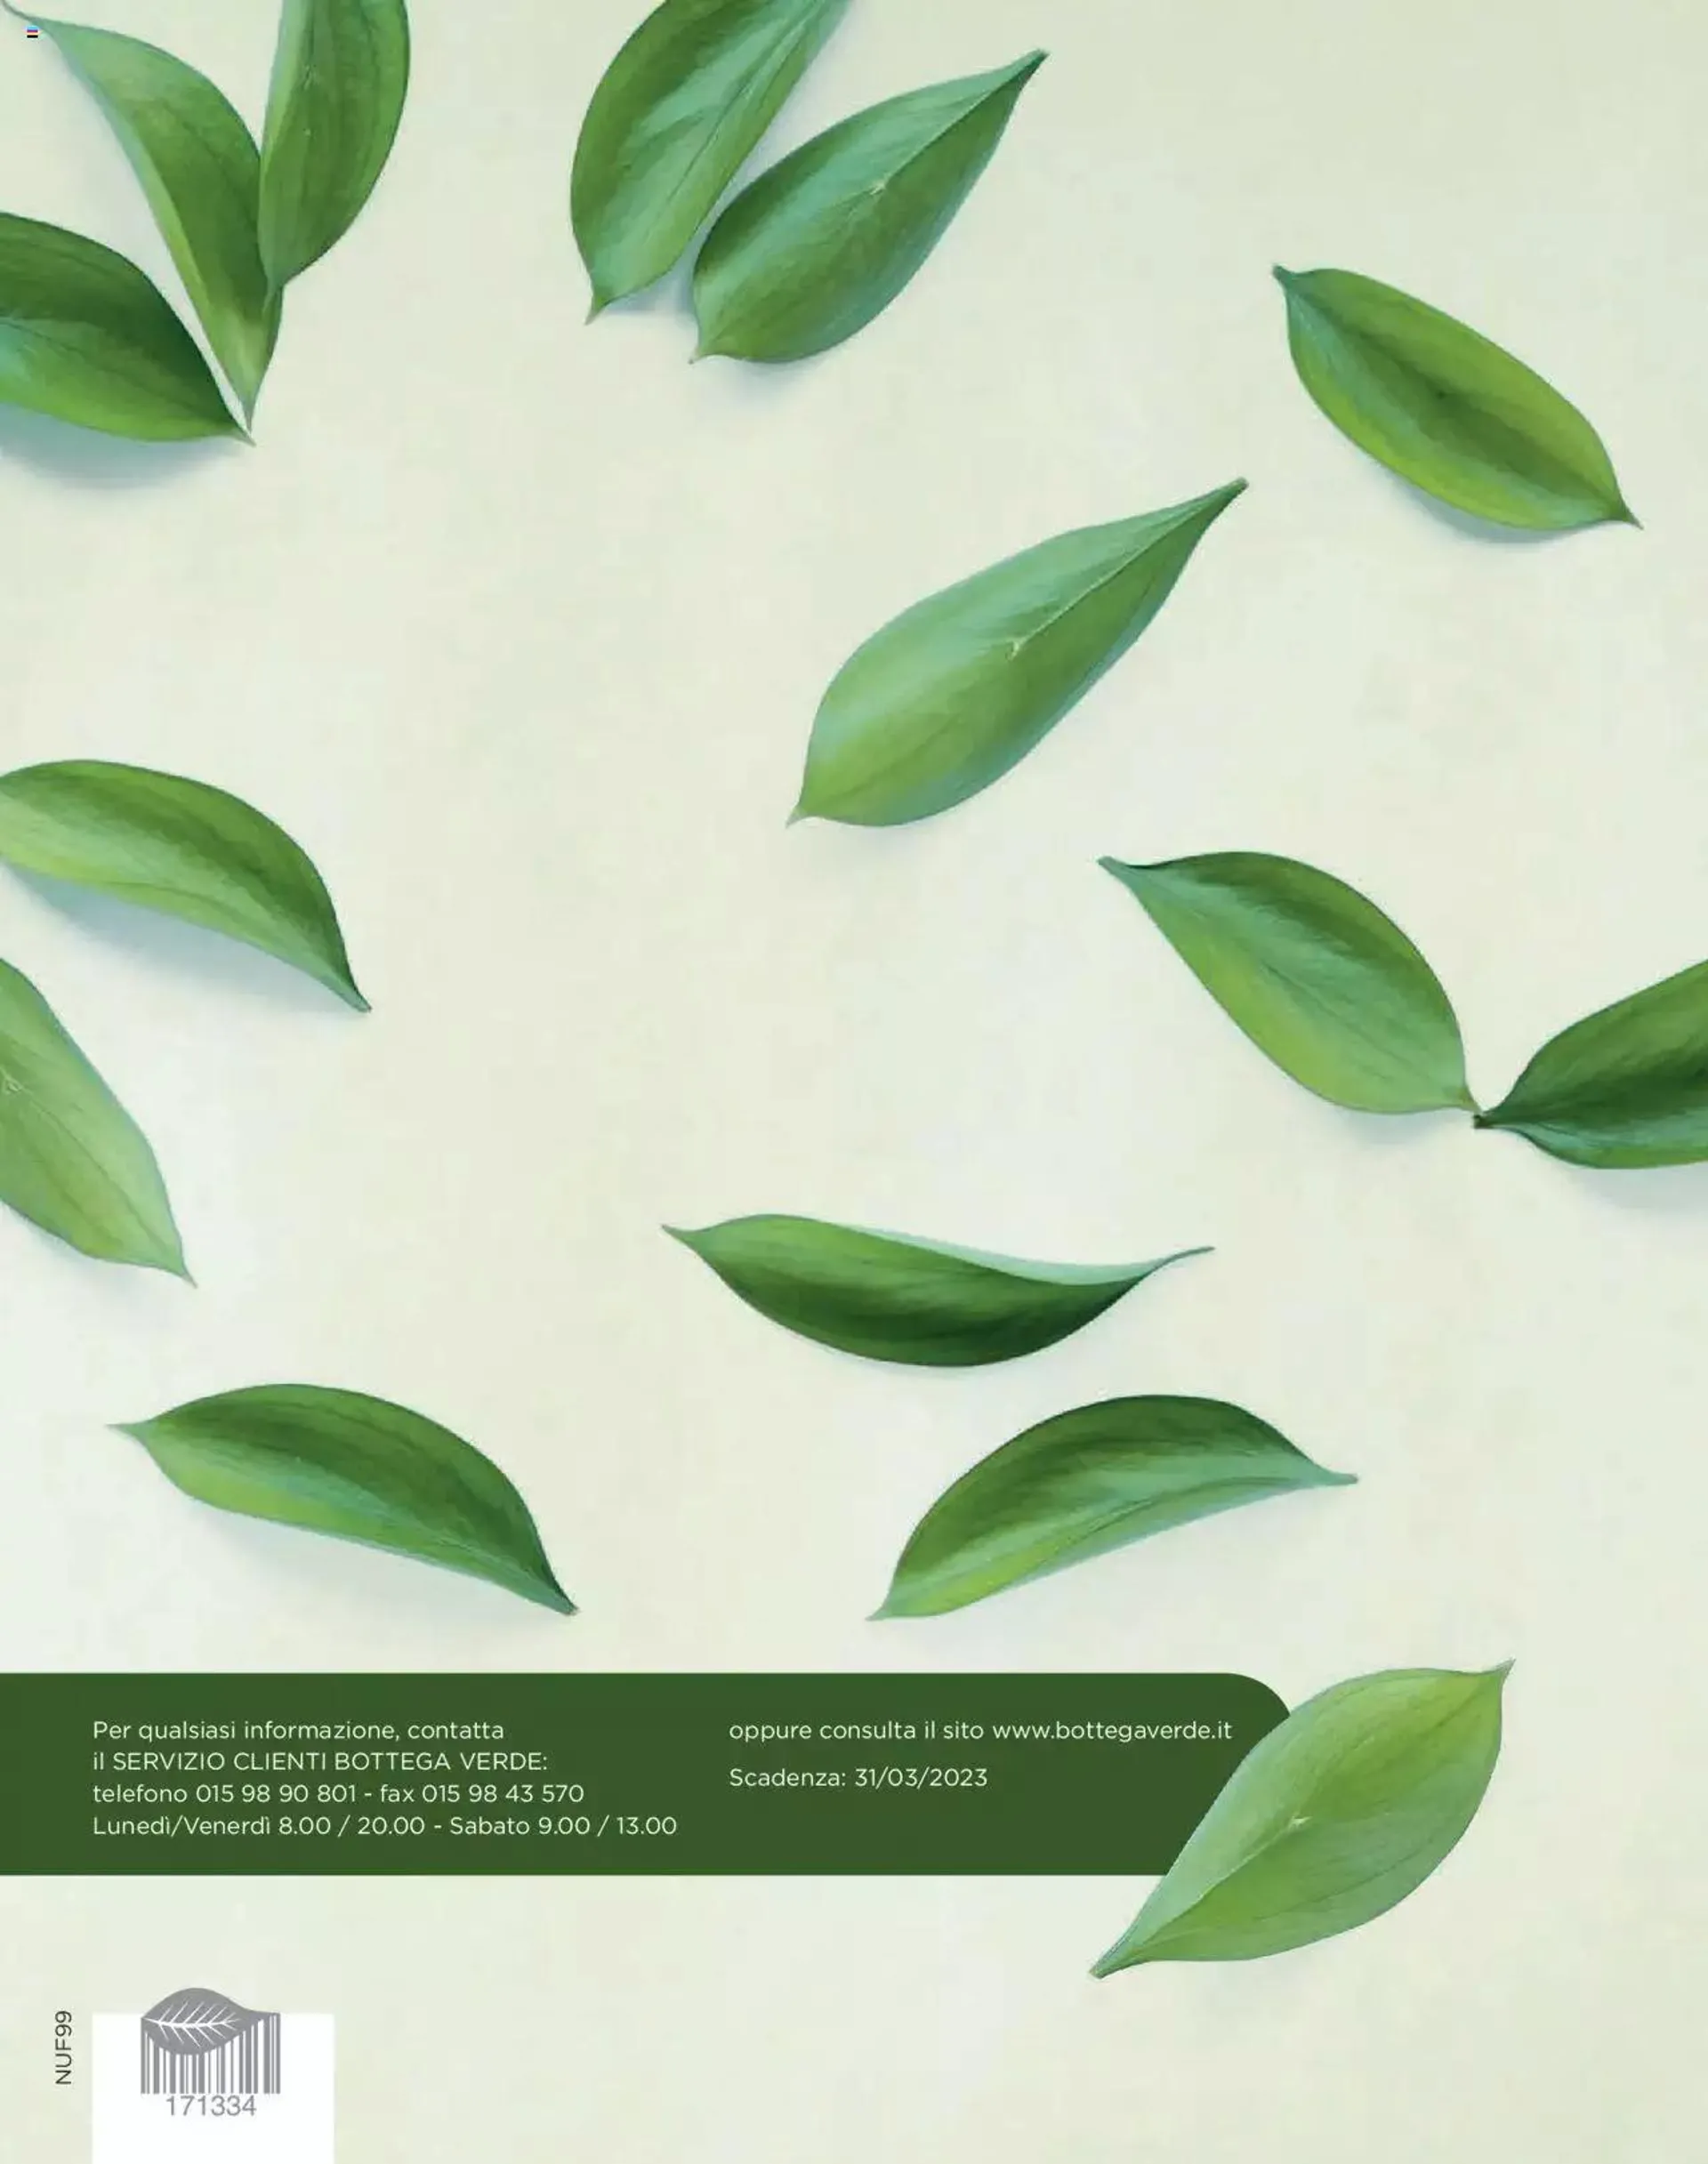 Bottega Verde - Catalogo Fedeltá da 27 settembre a 31 marzo di 2023 - Pagina del volantino 32